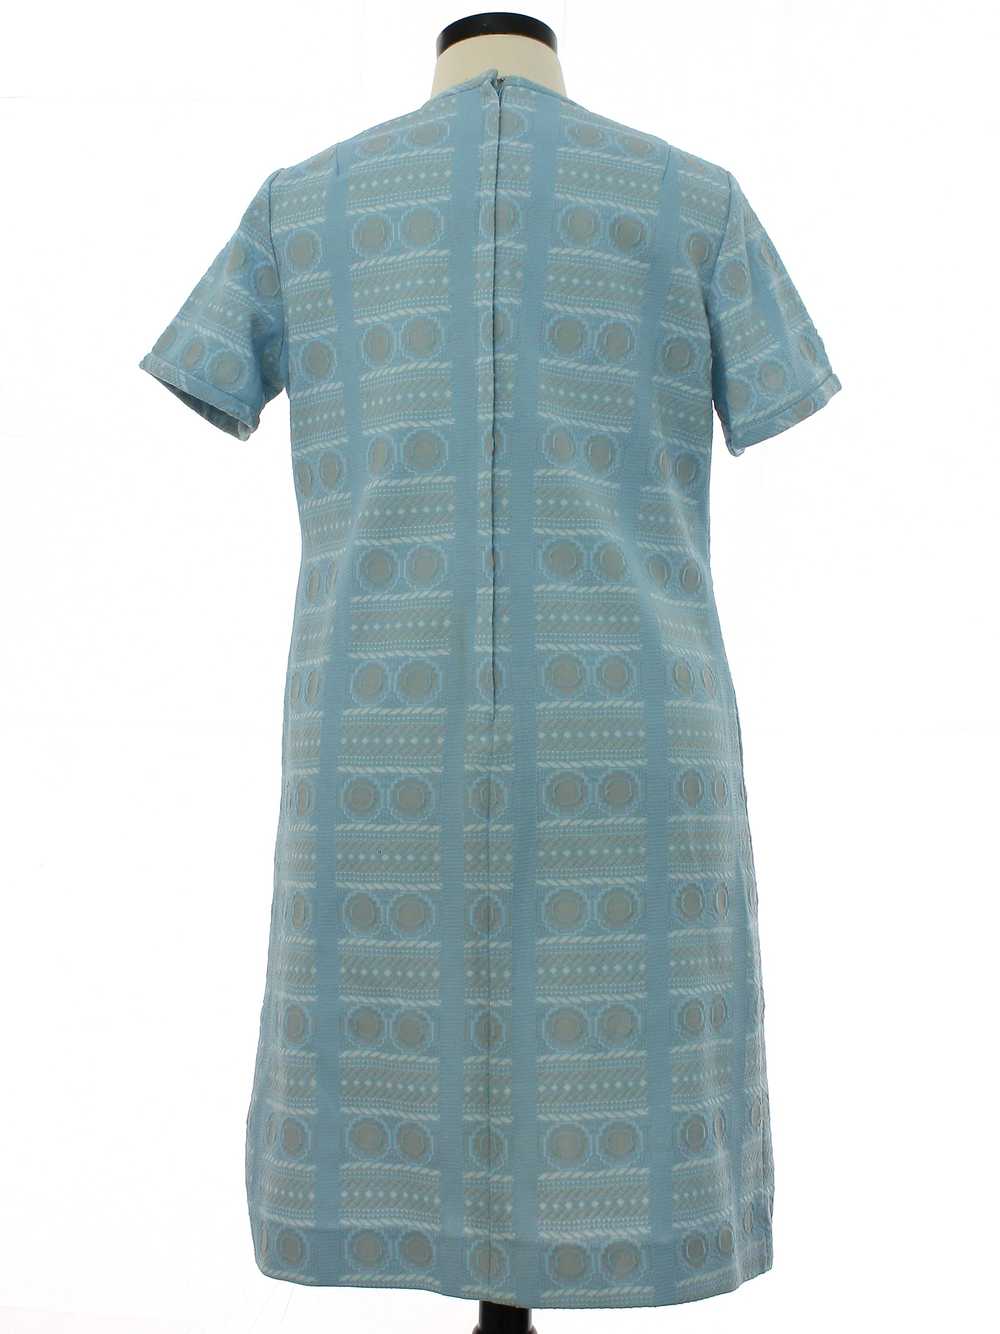 1970's Mod Knit A-Line Dress - image 3